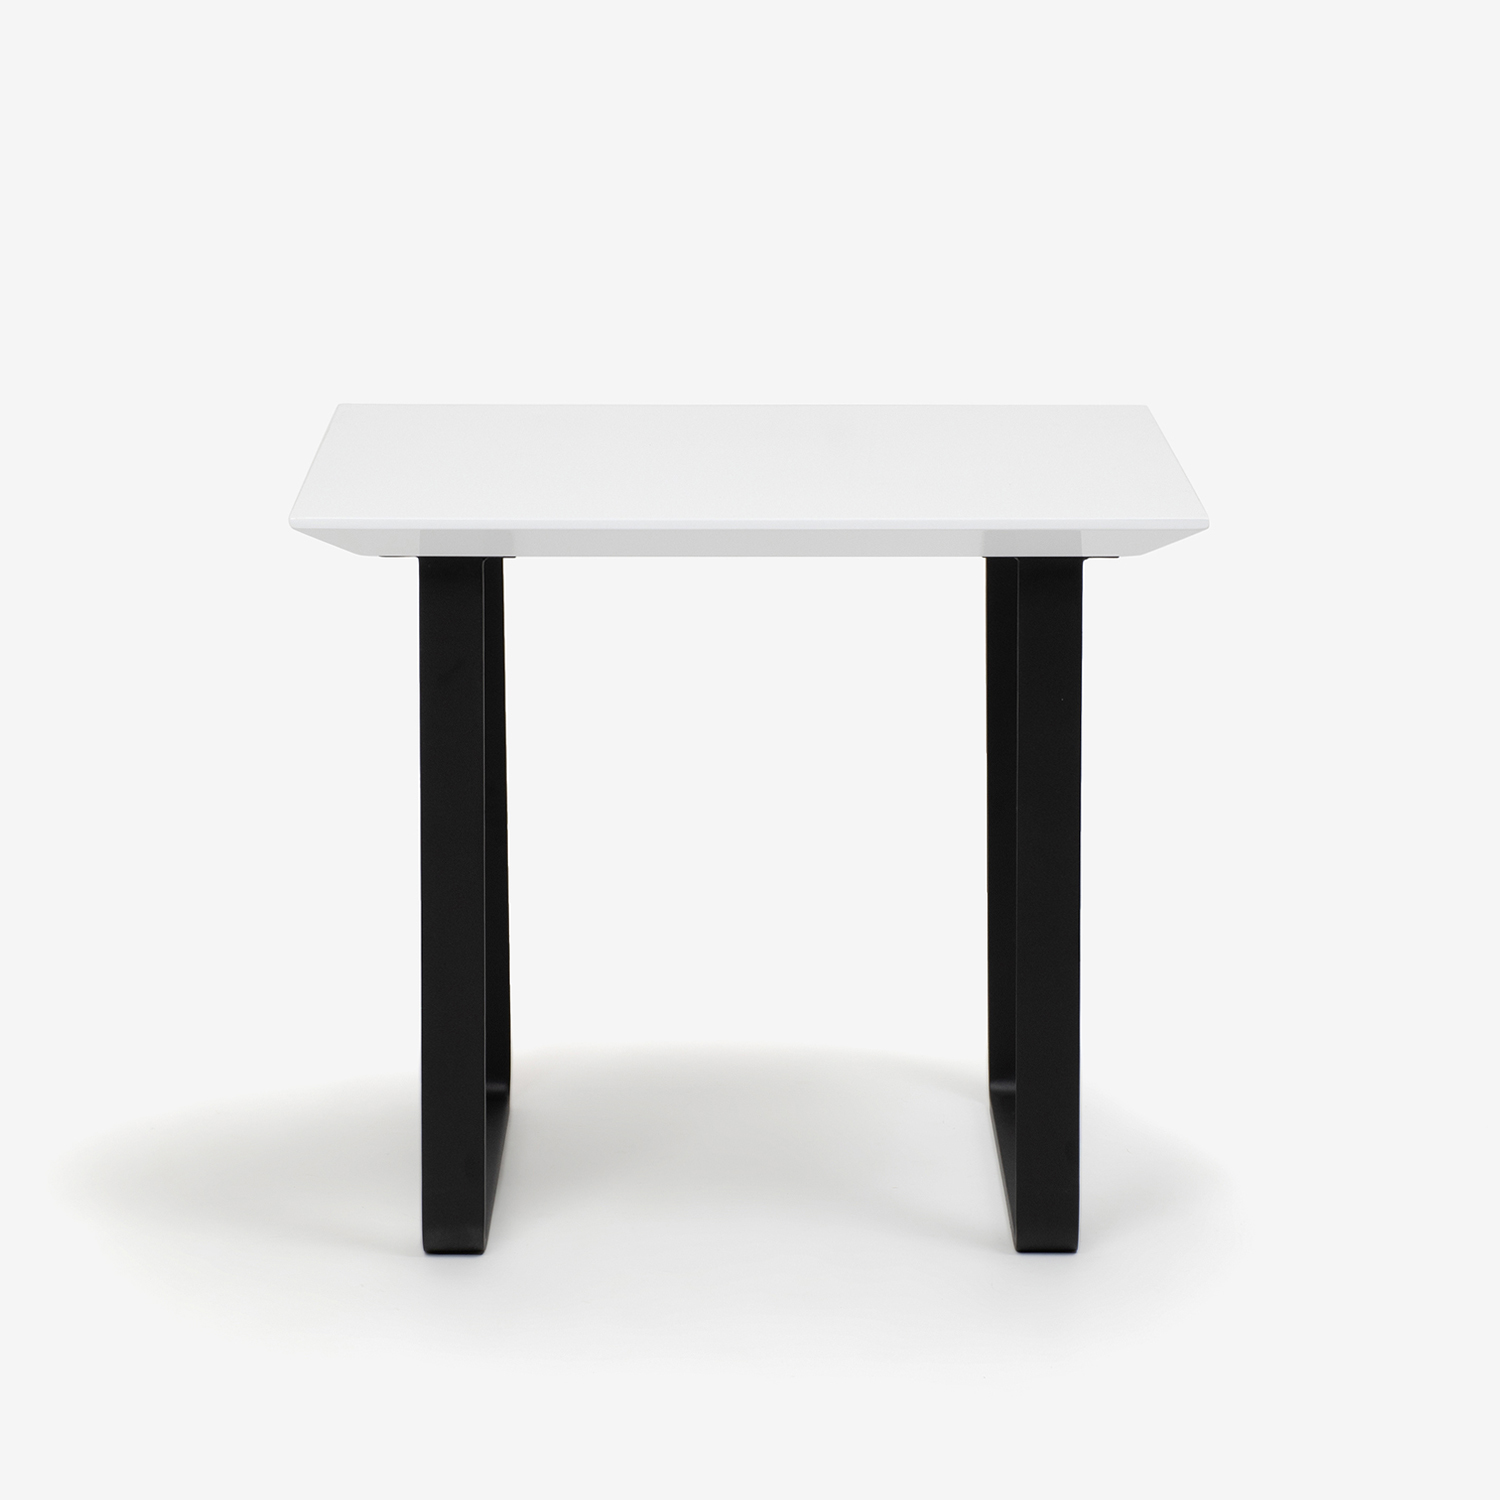 ダイニングテーブル「ジャスト」幅85cm ホワイト色 金属脚ブラック【数量限定特別ご提供品のため30%OFF】